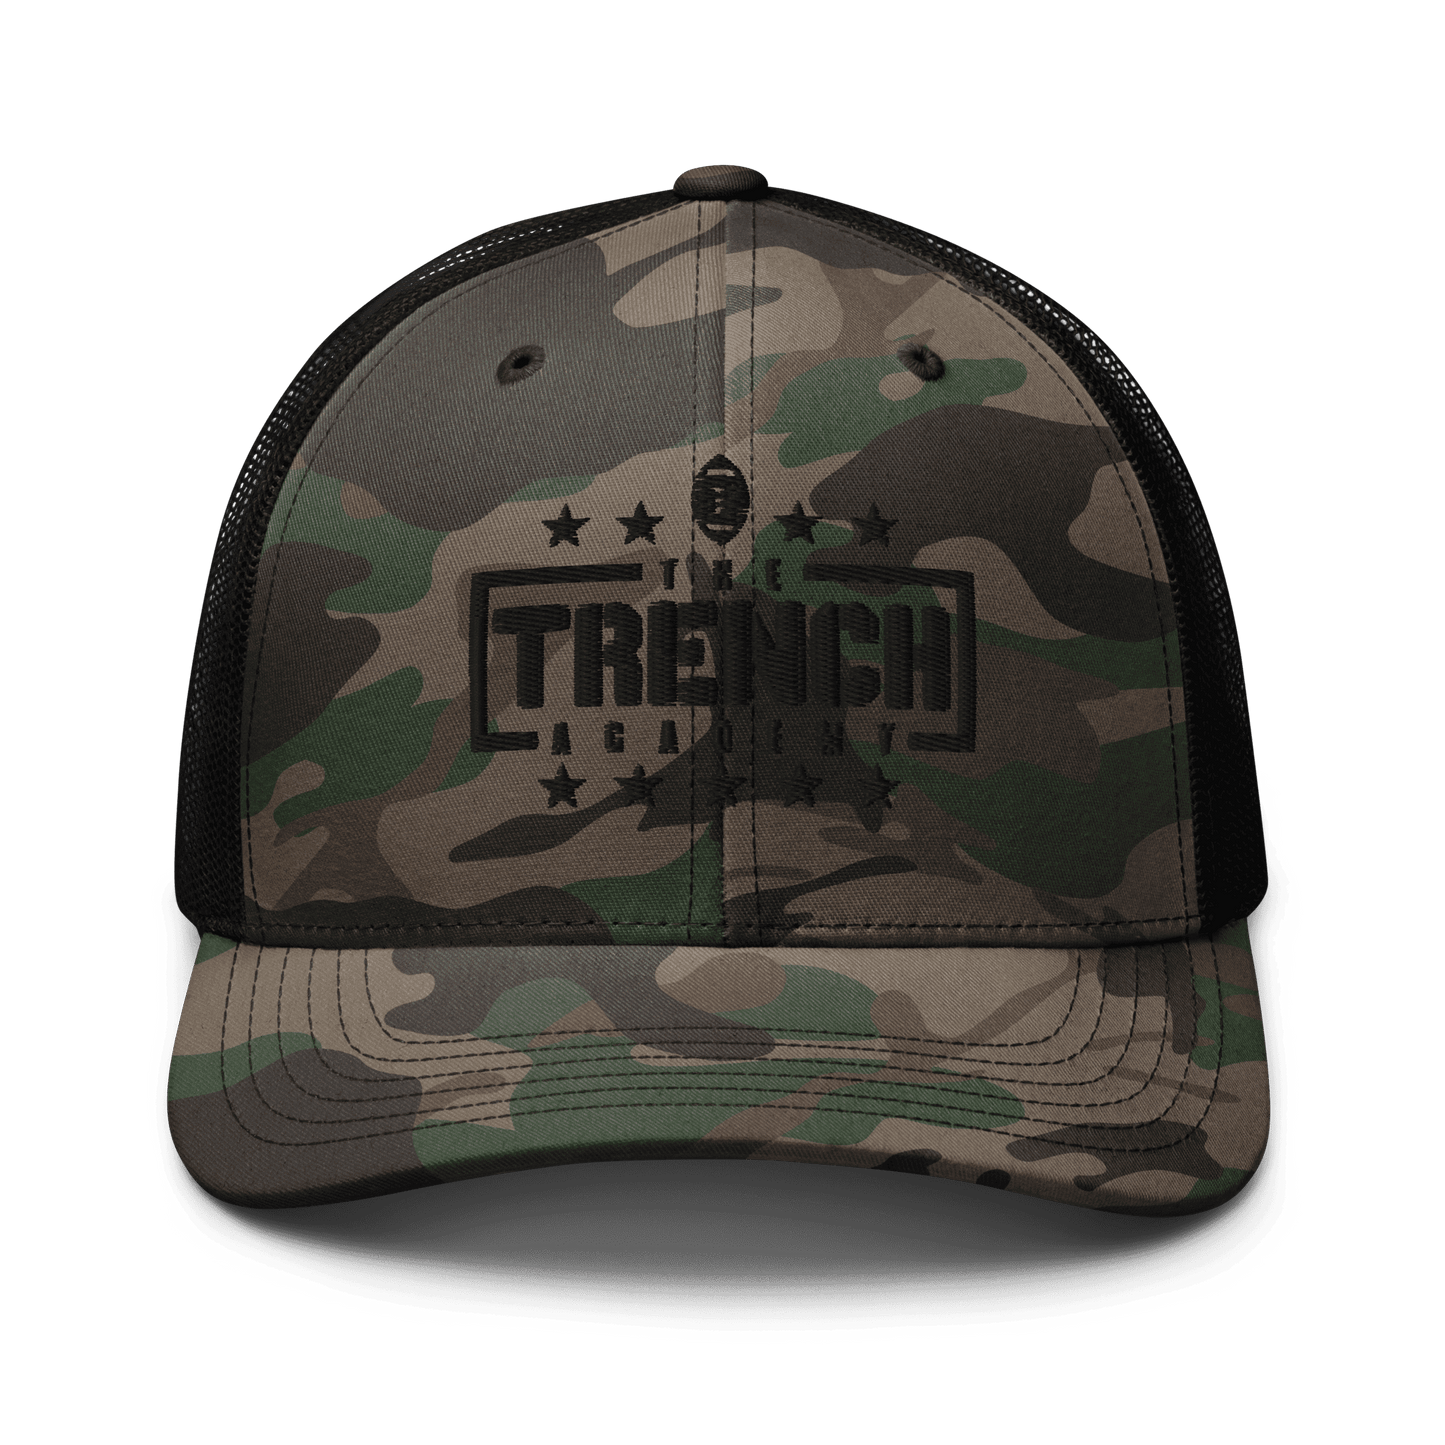 Trench | Camo Trucker Cap - Clutch -